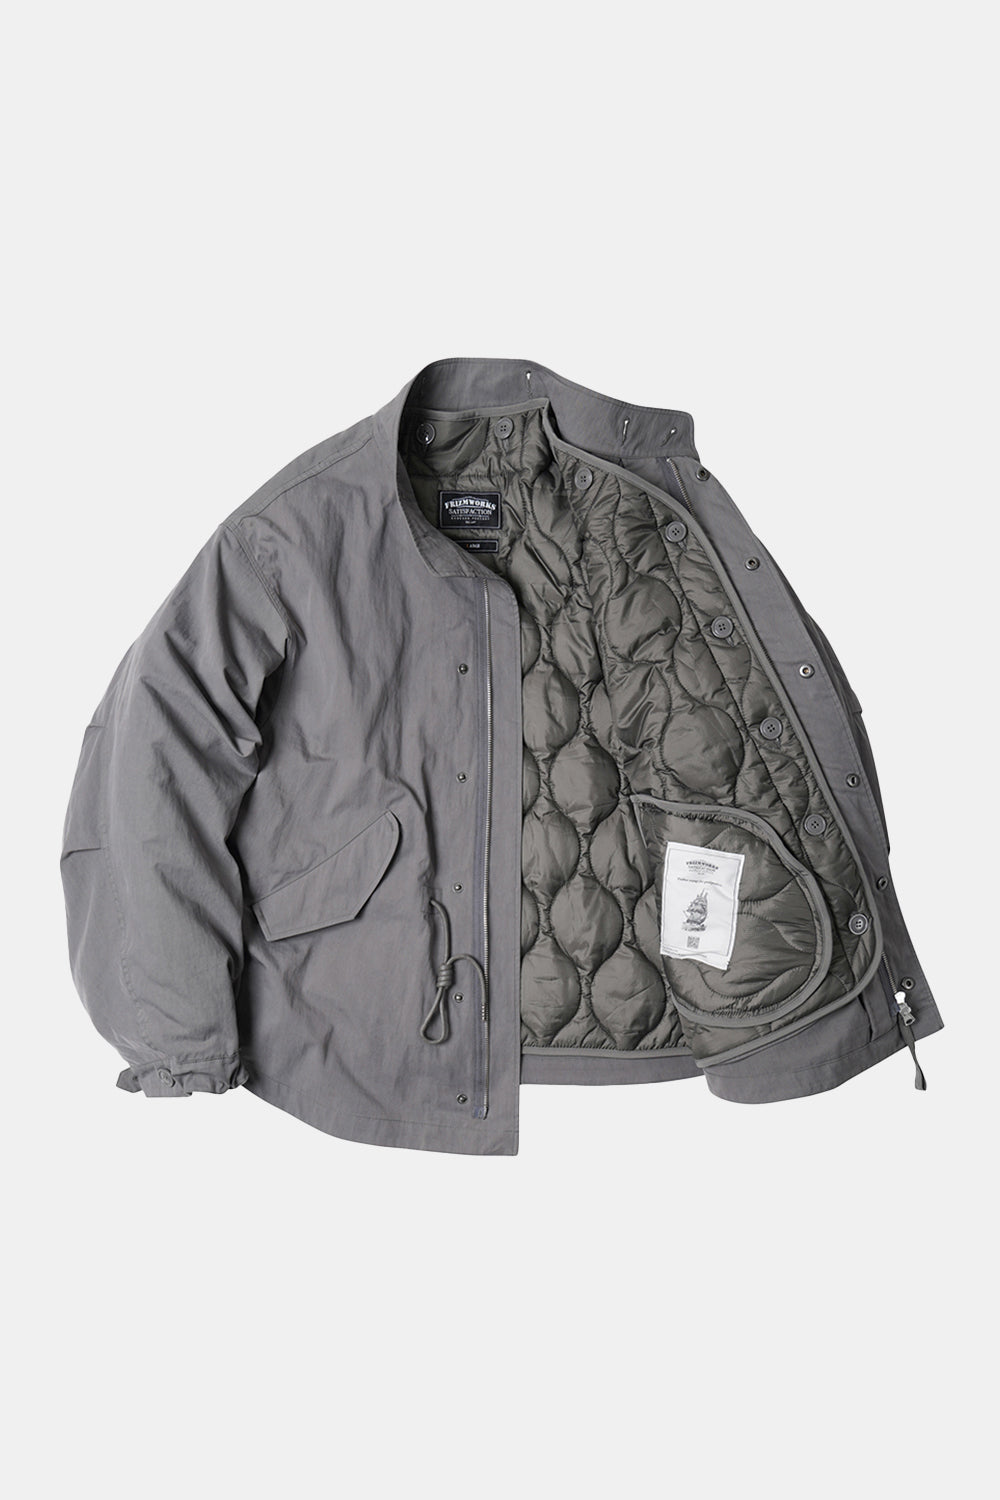 Frizmworks Oscar Fishtail 2 in 1 Jacket (Grey)